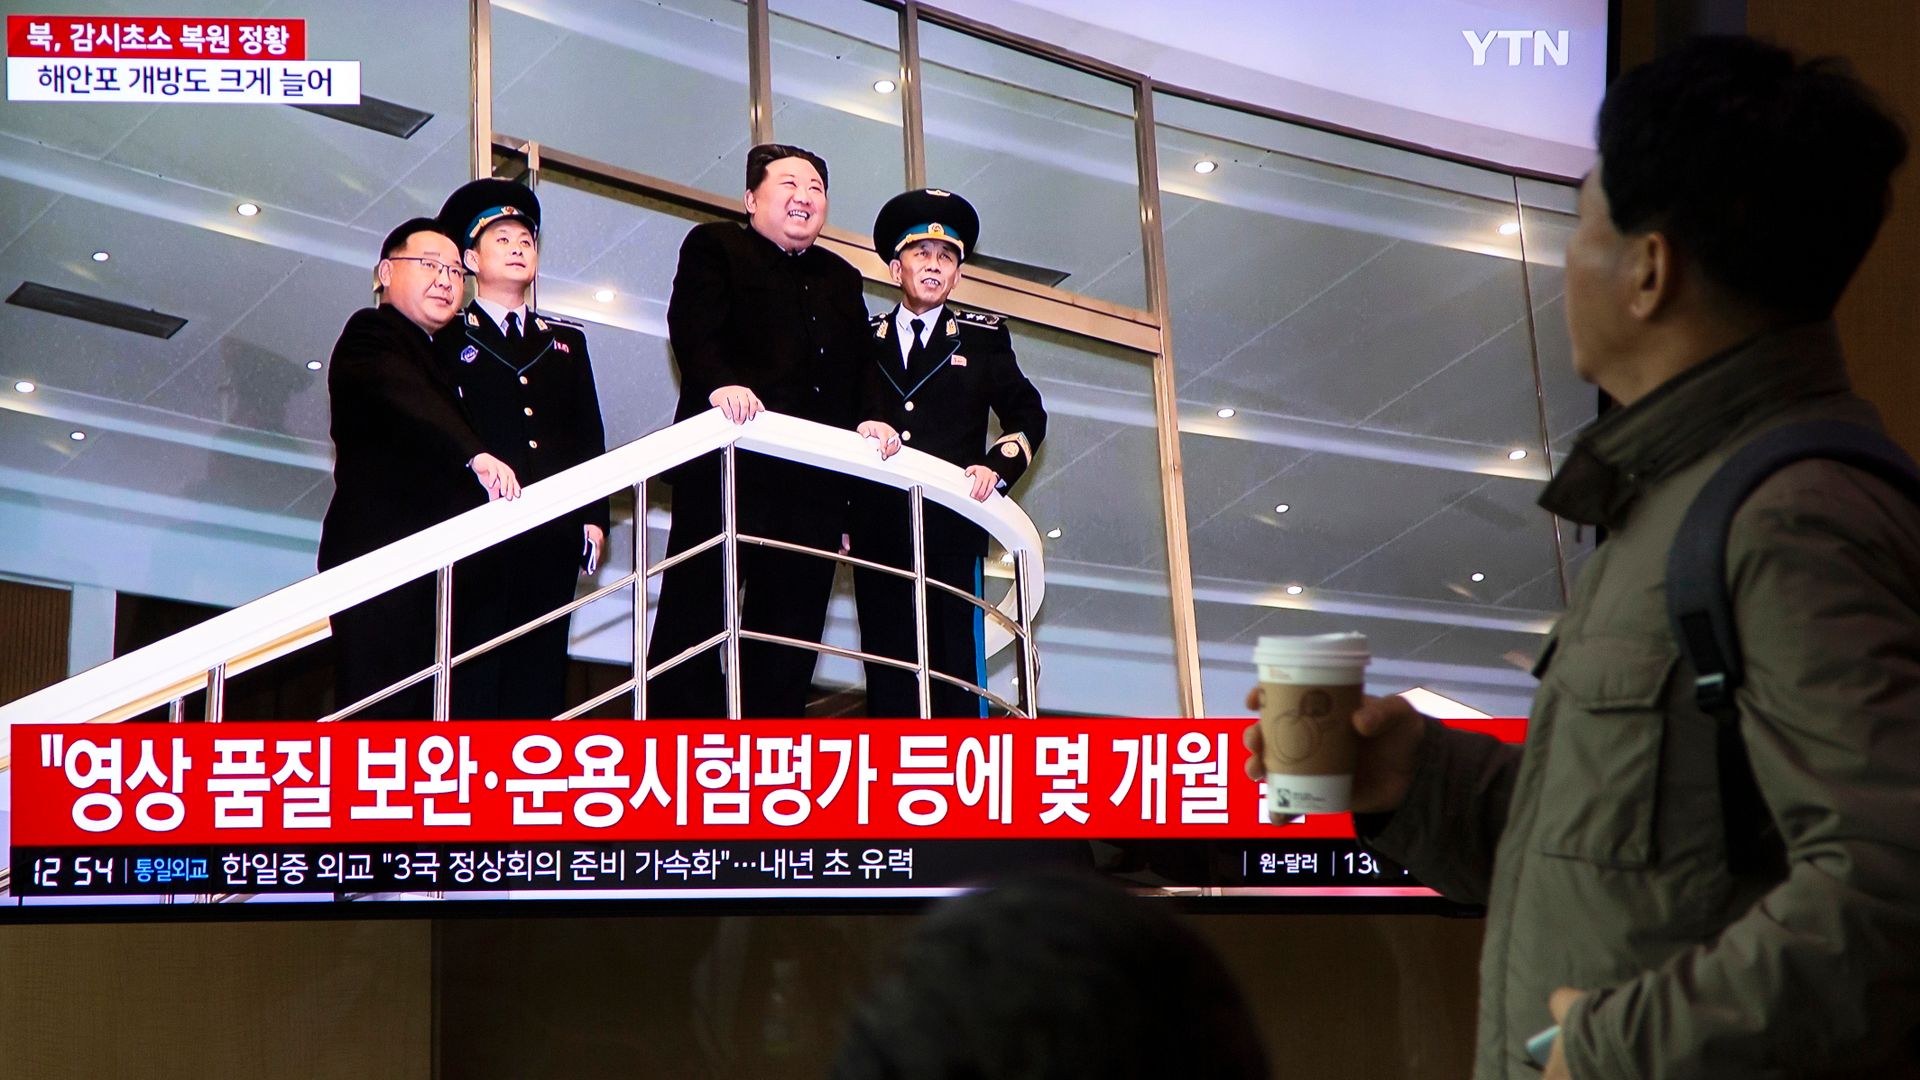 nordkorea: erste bilder von neuem satelliten – kim zählt us-flugzeugträger